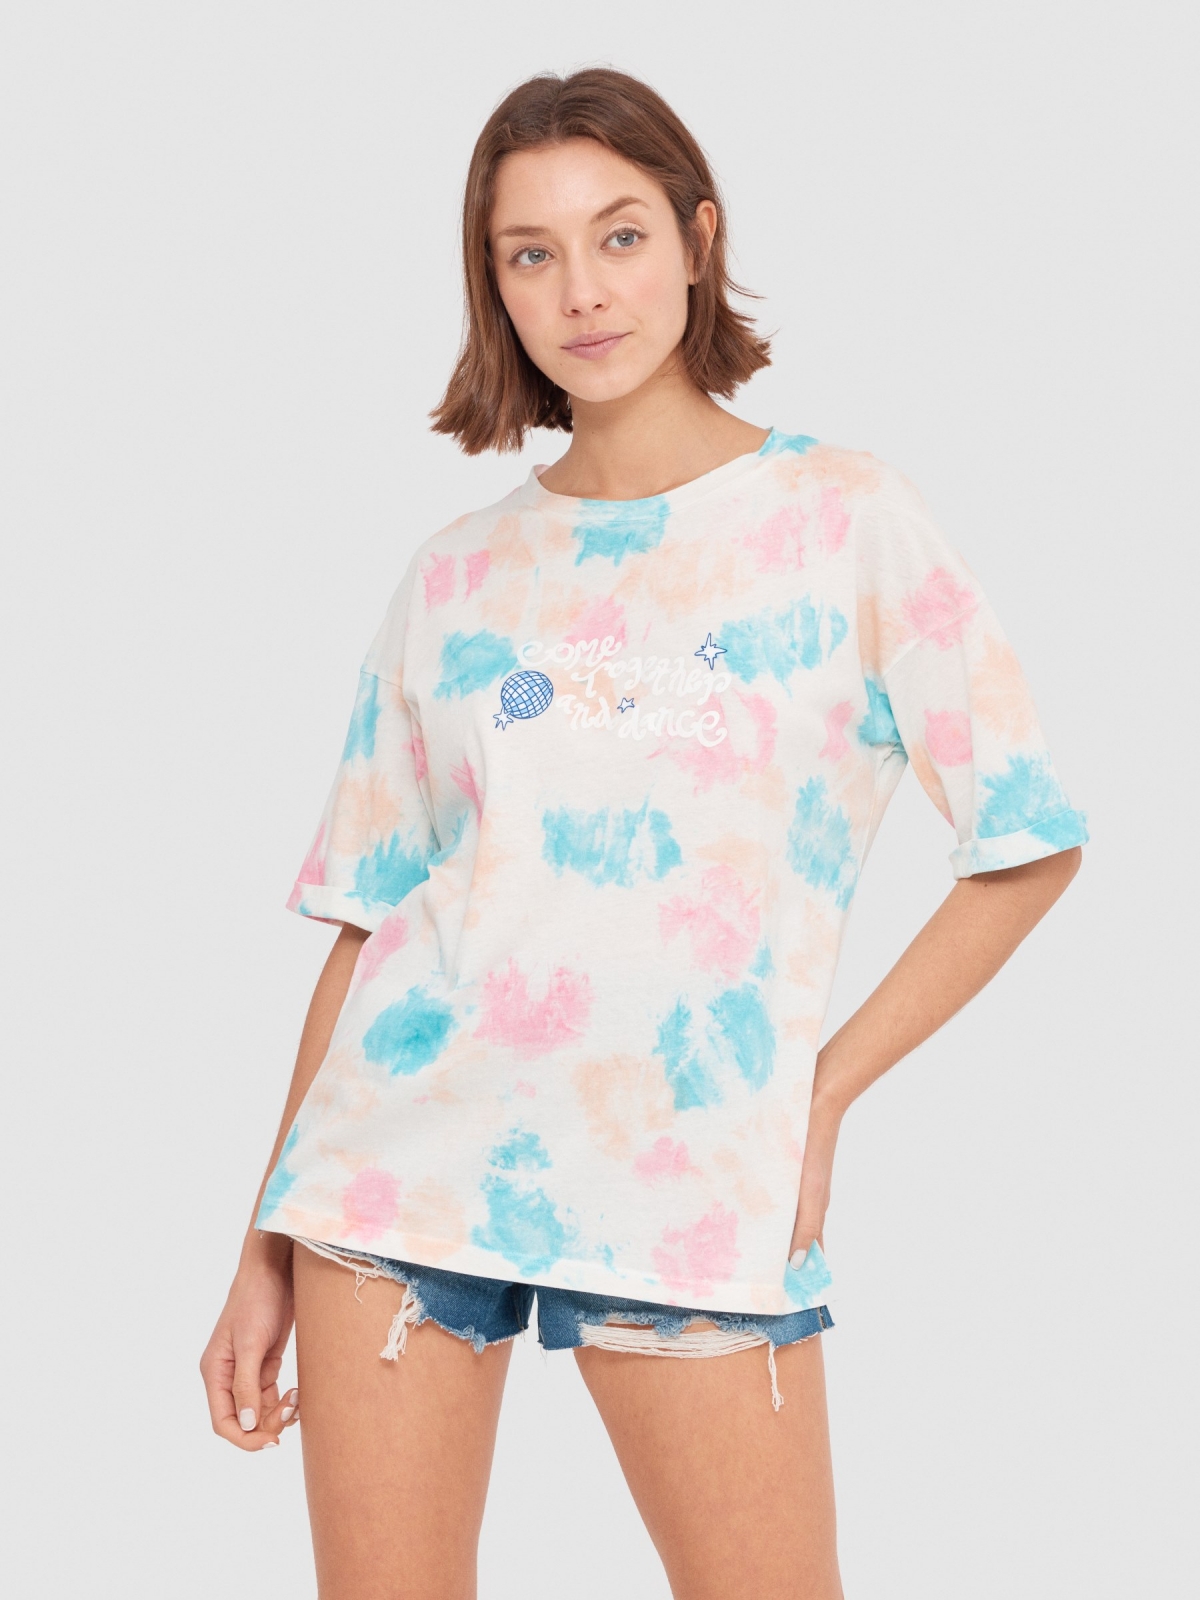 Camiseta tie dye con ilustración rosa claro vista media frontal